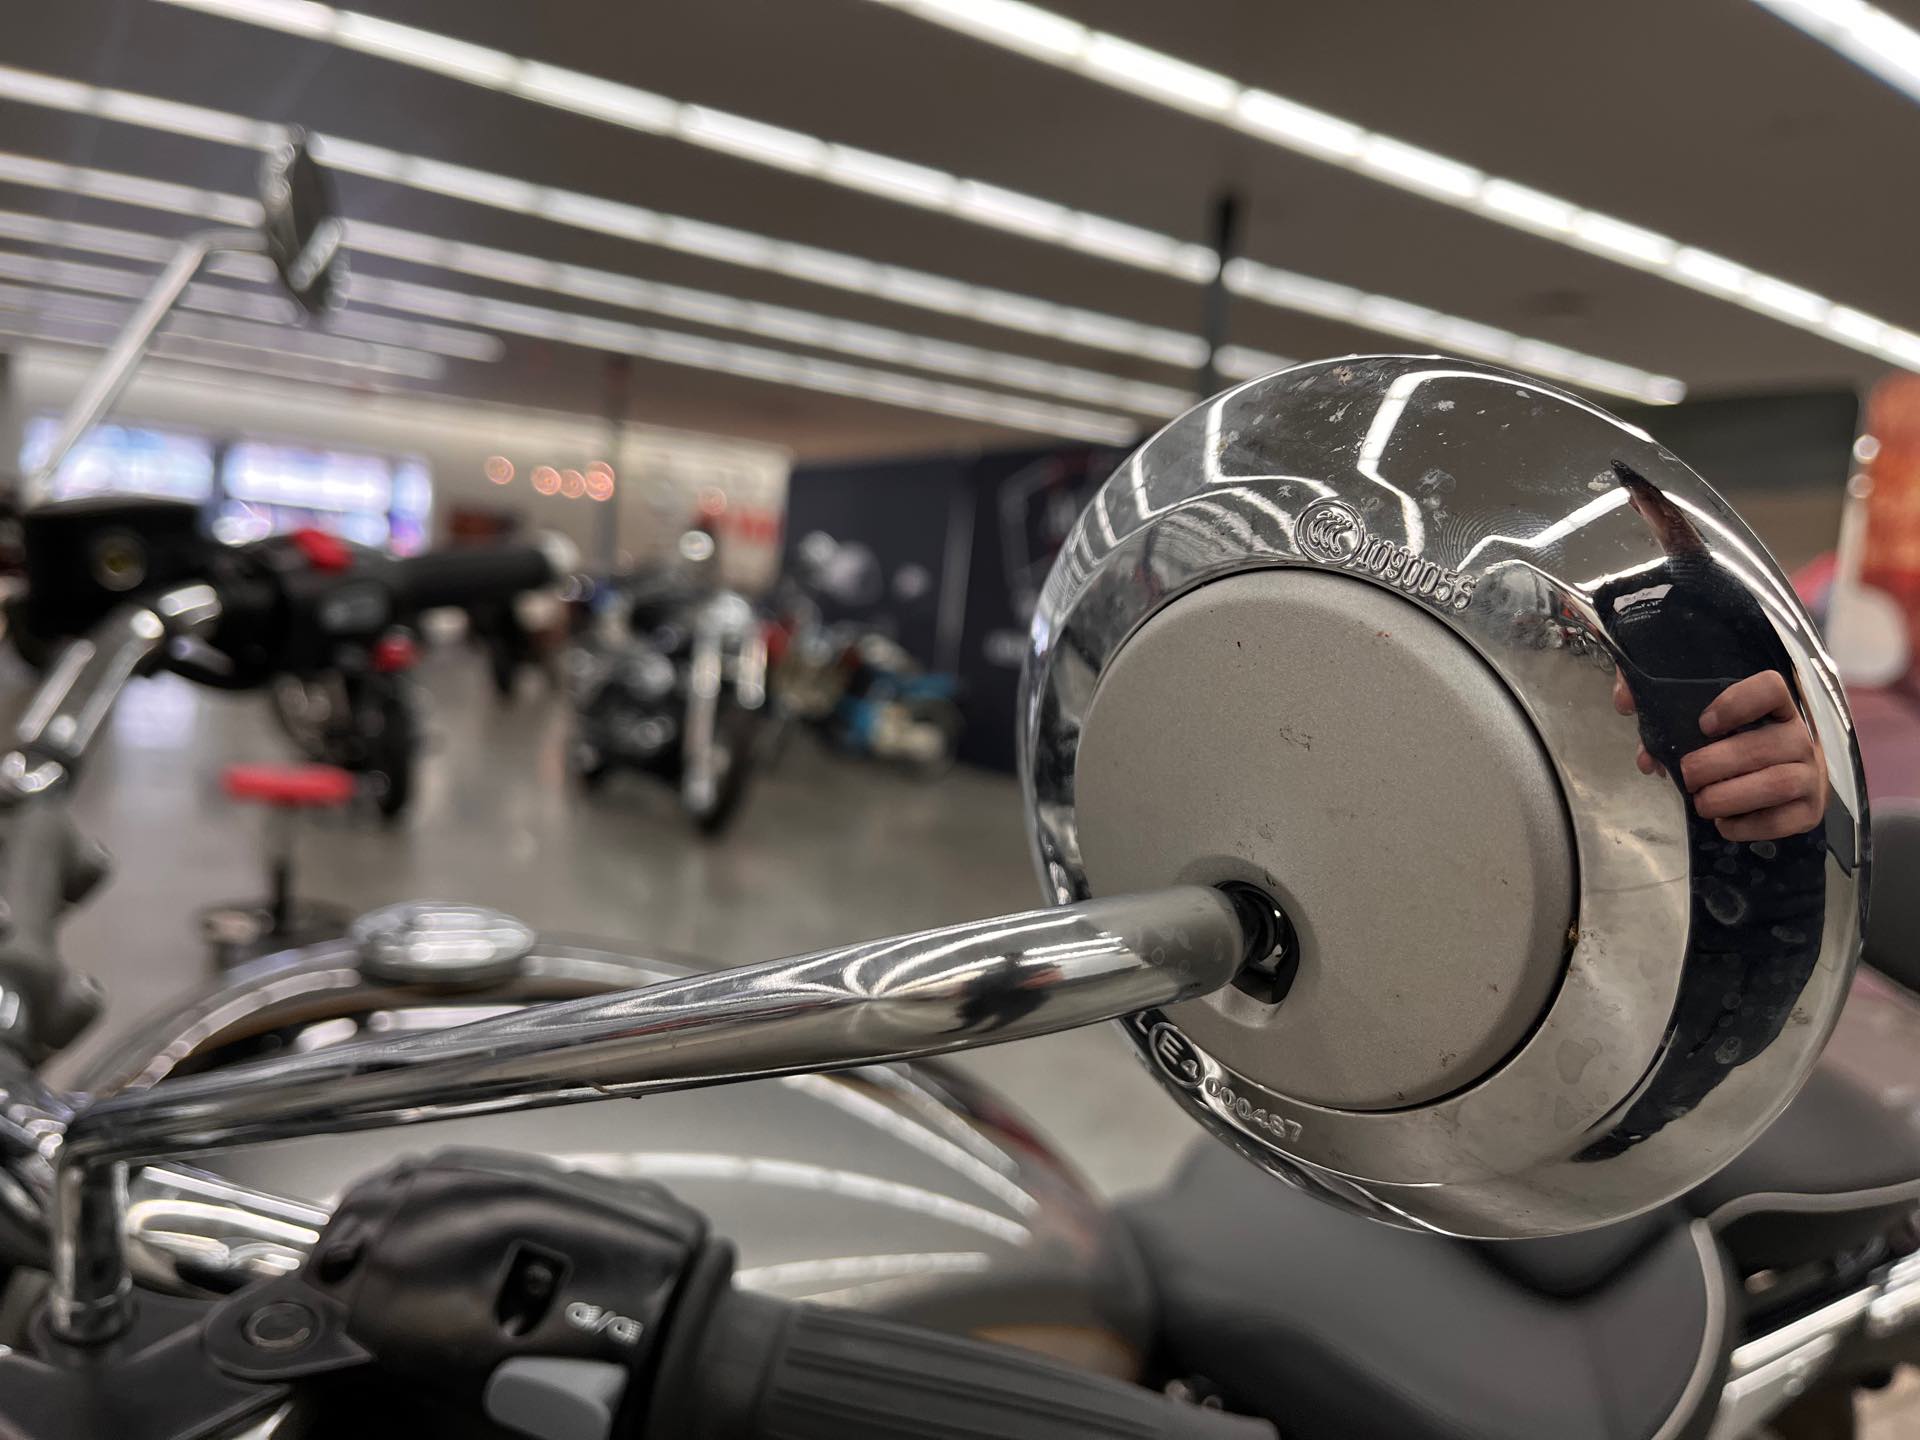 2022 Triumph Bonneville Speedmaster Gold Line at Aces Motorcycles - Denver